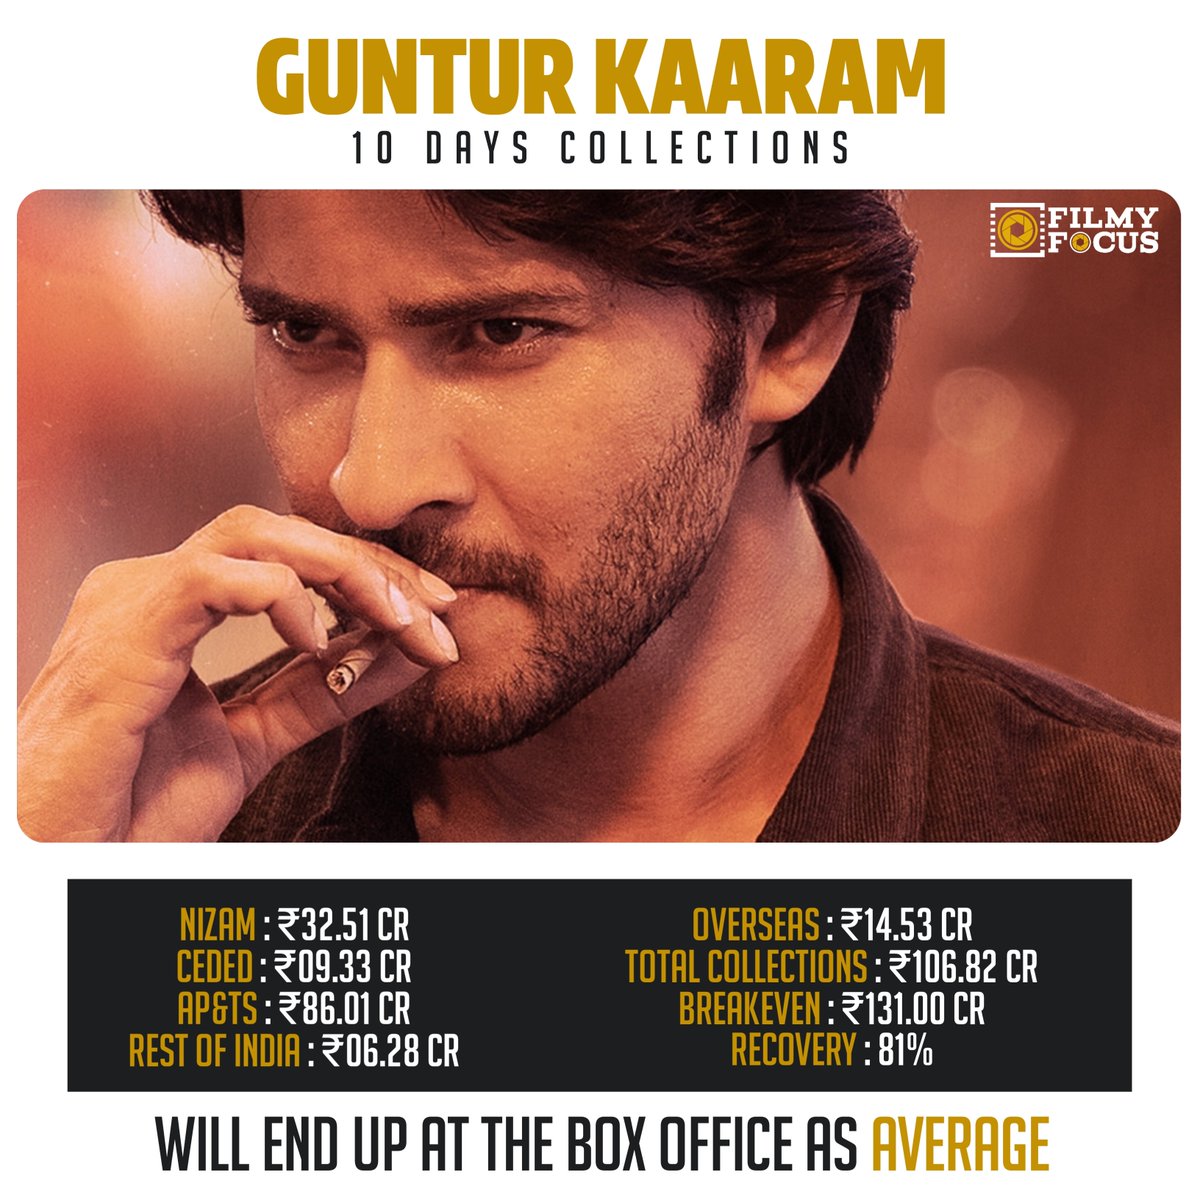 #GunturKaaram 10 days collections!

#FilmyFocusBoxOffice